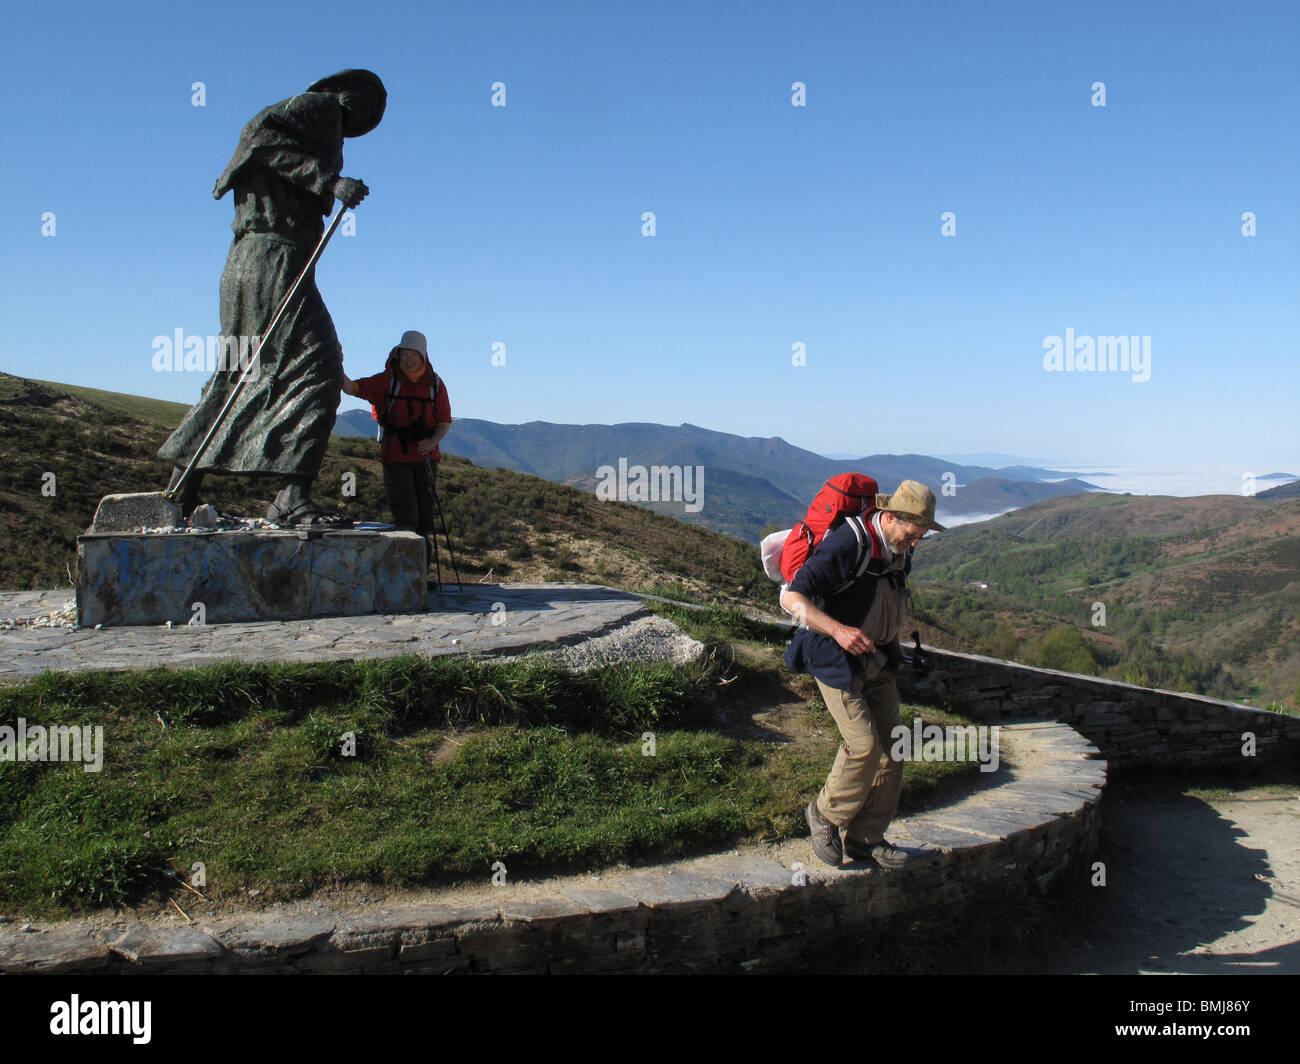 Statue de pèlerin dans la colline de San Roque. La Galice. L'Espagne. Chemin de Saint Jacques. Banque D'Images